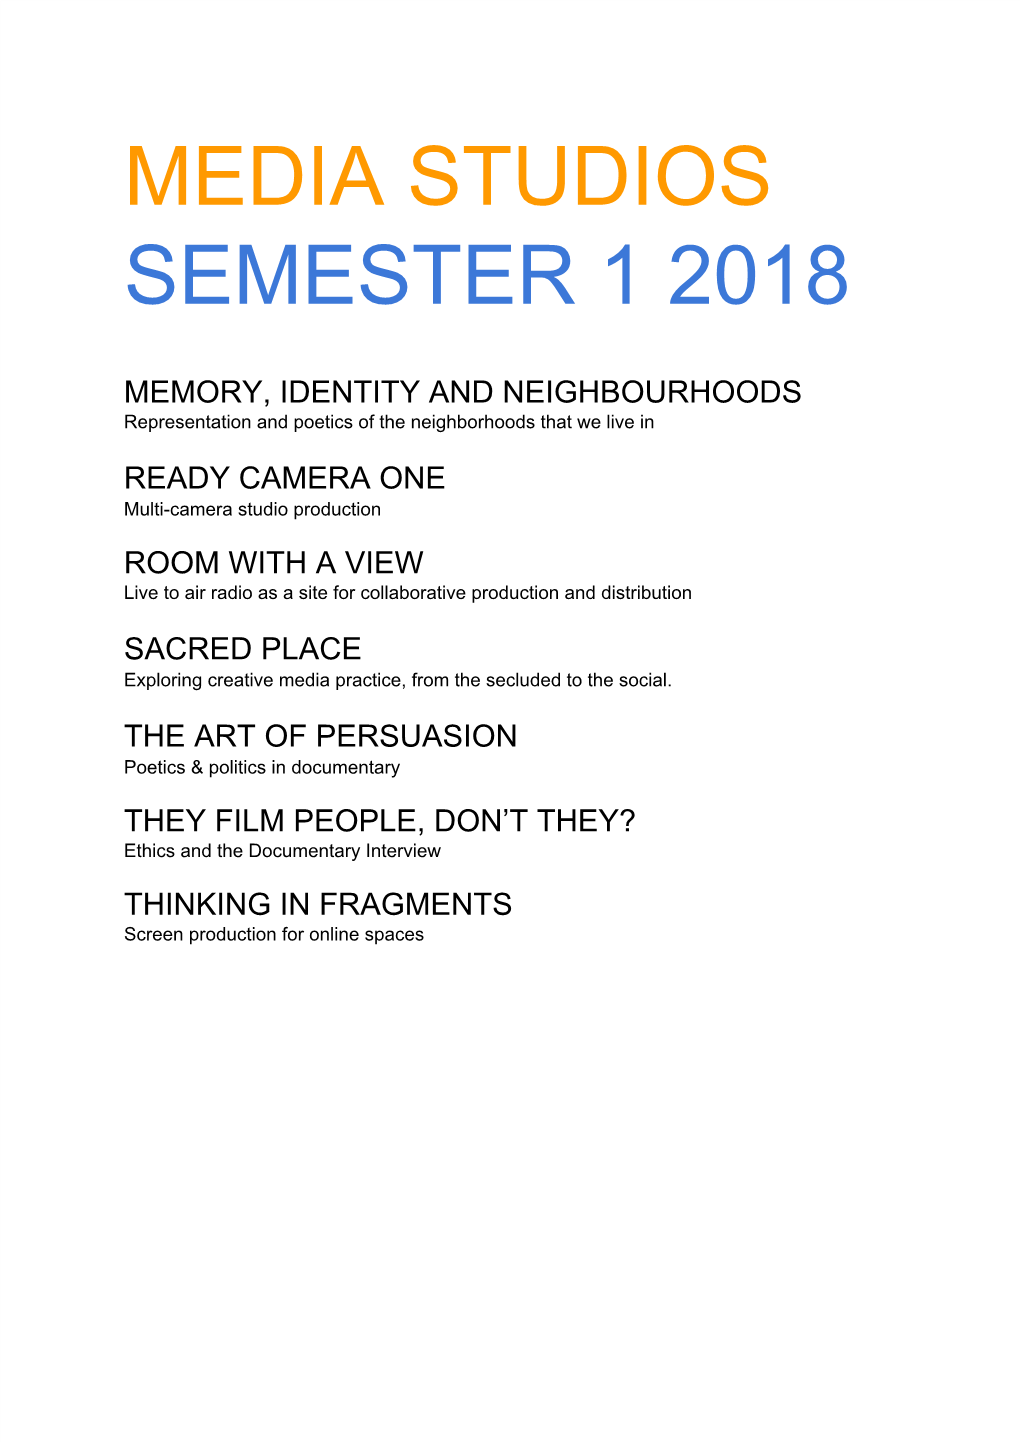 Media Studios Semester 1 2018